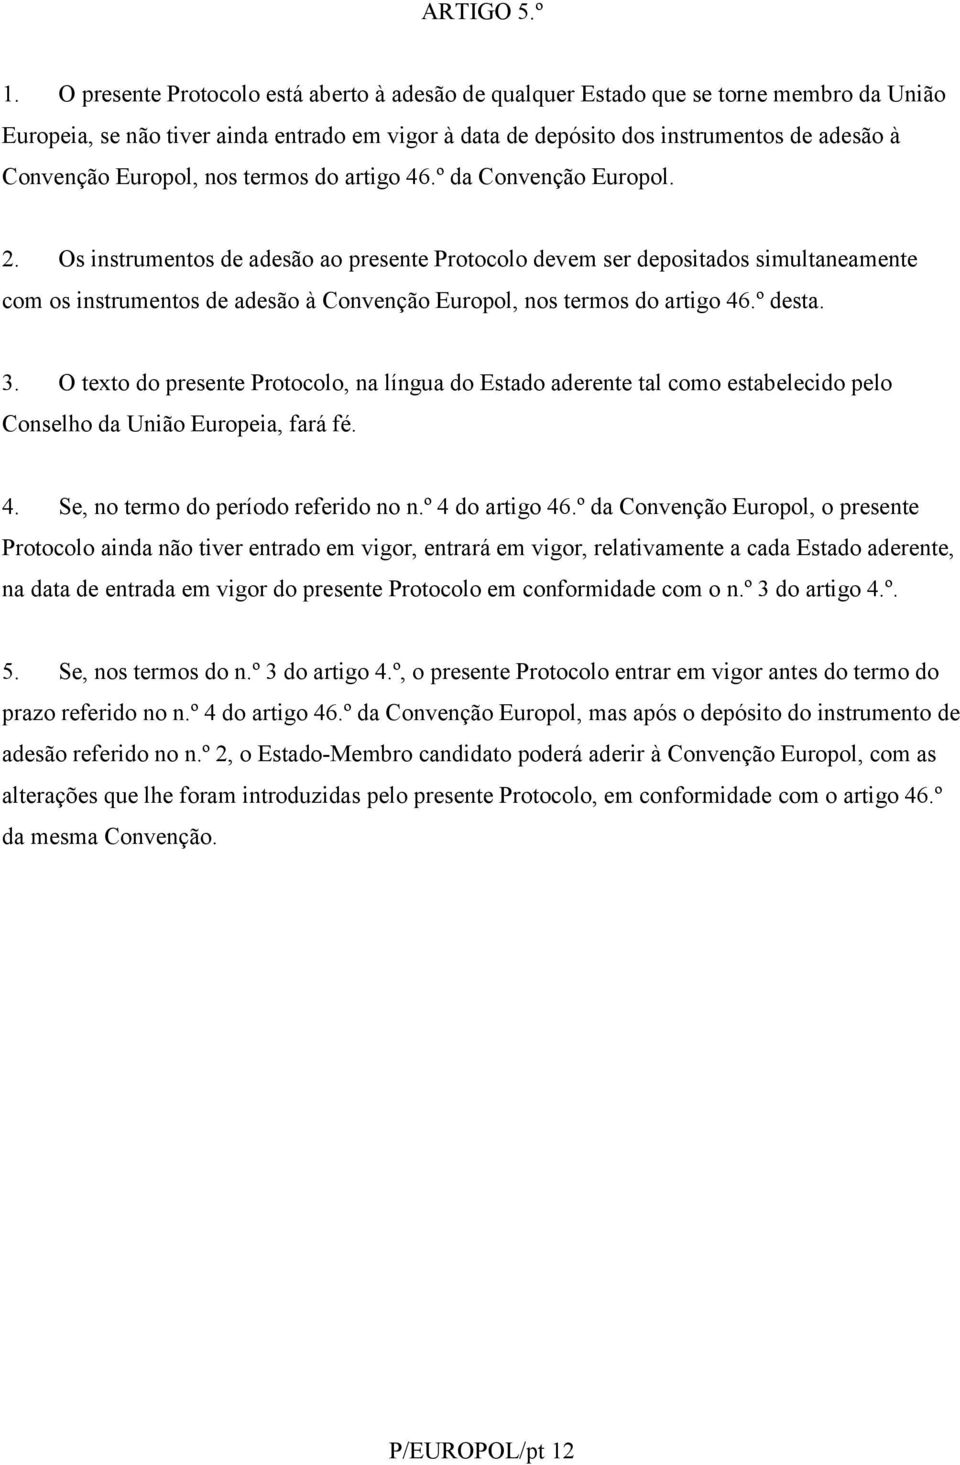 Europol, nos termos do artigo 46.º da Convenção Europol. 2.